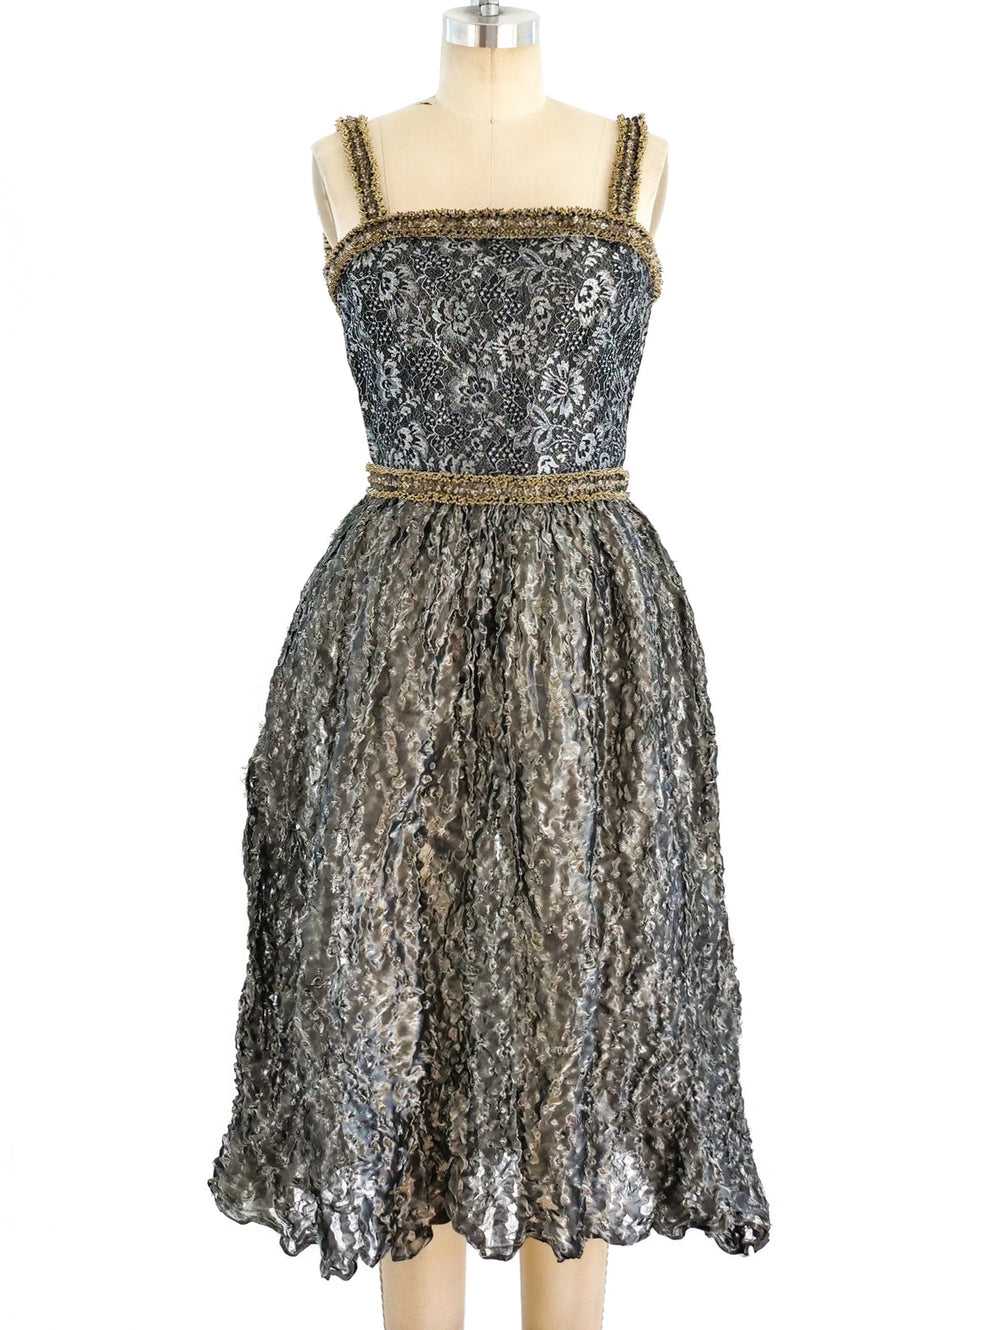 Mary McFadden Embellished Metallic Dress - image 1